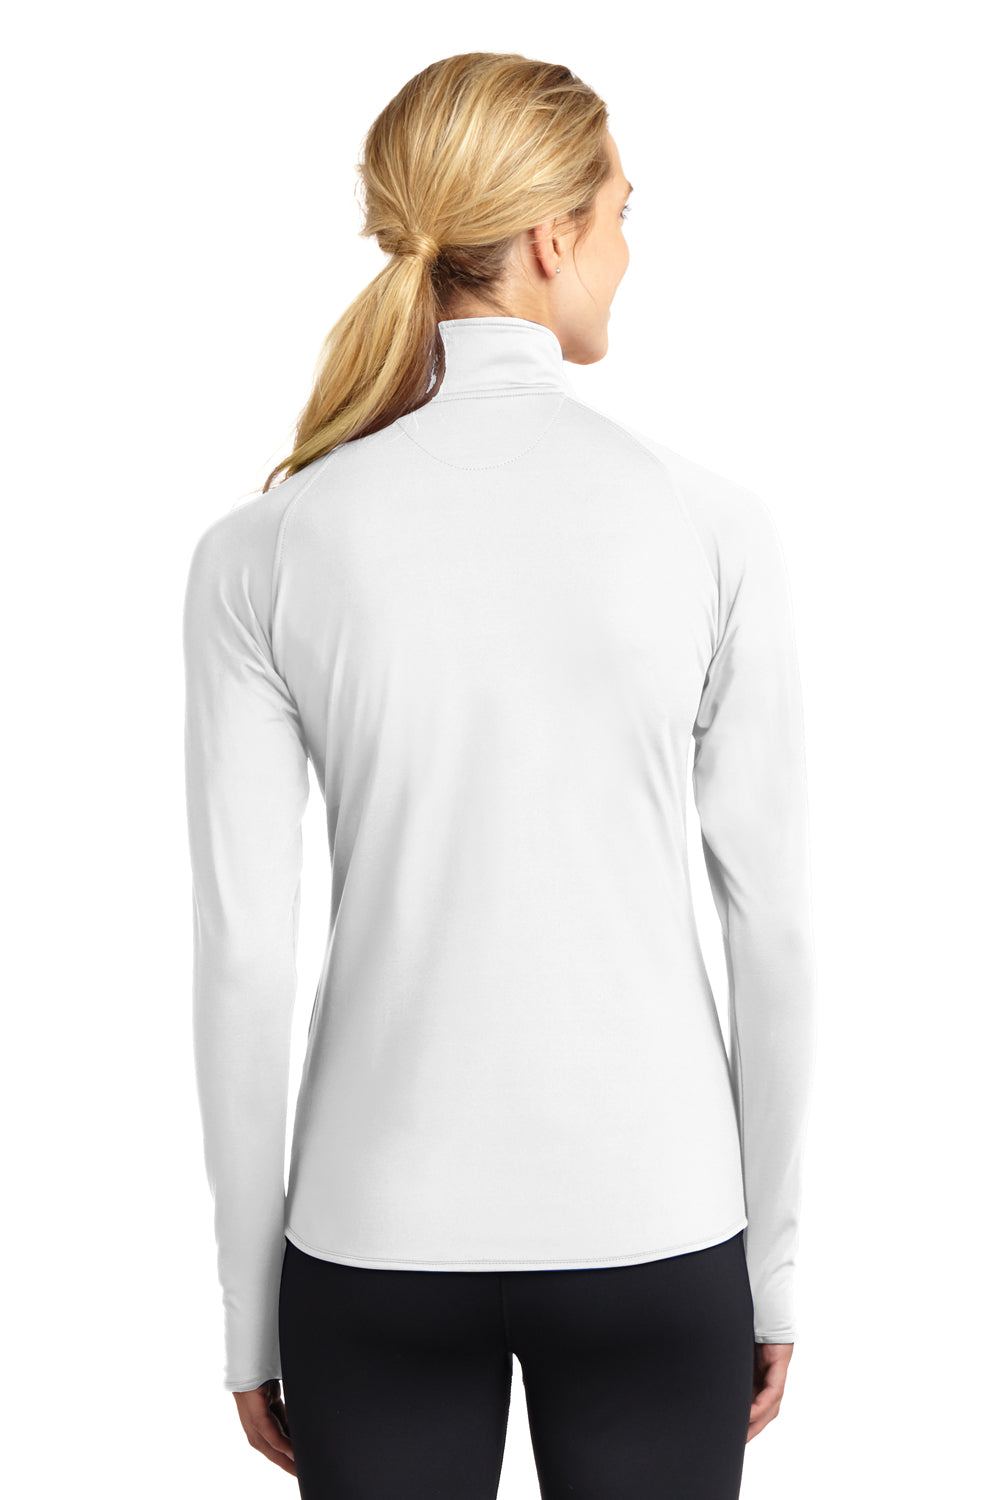 Sport-Tek LST850 Womens Sport-Wick Moisture Wicking 1/4 Zip Sweatshirt White Back